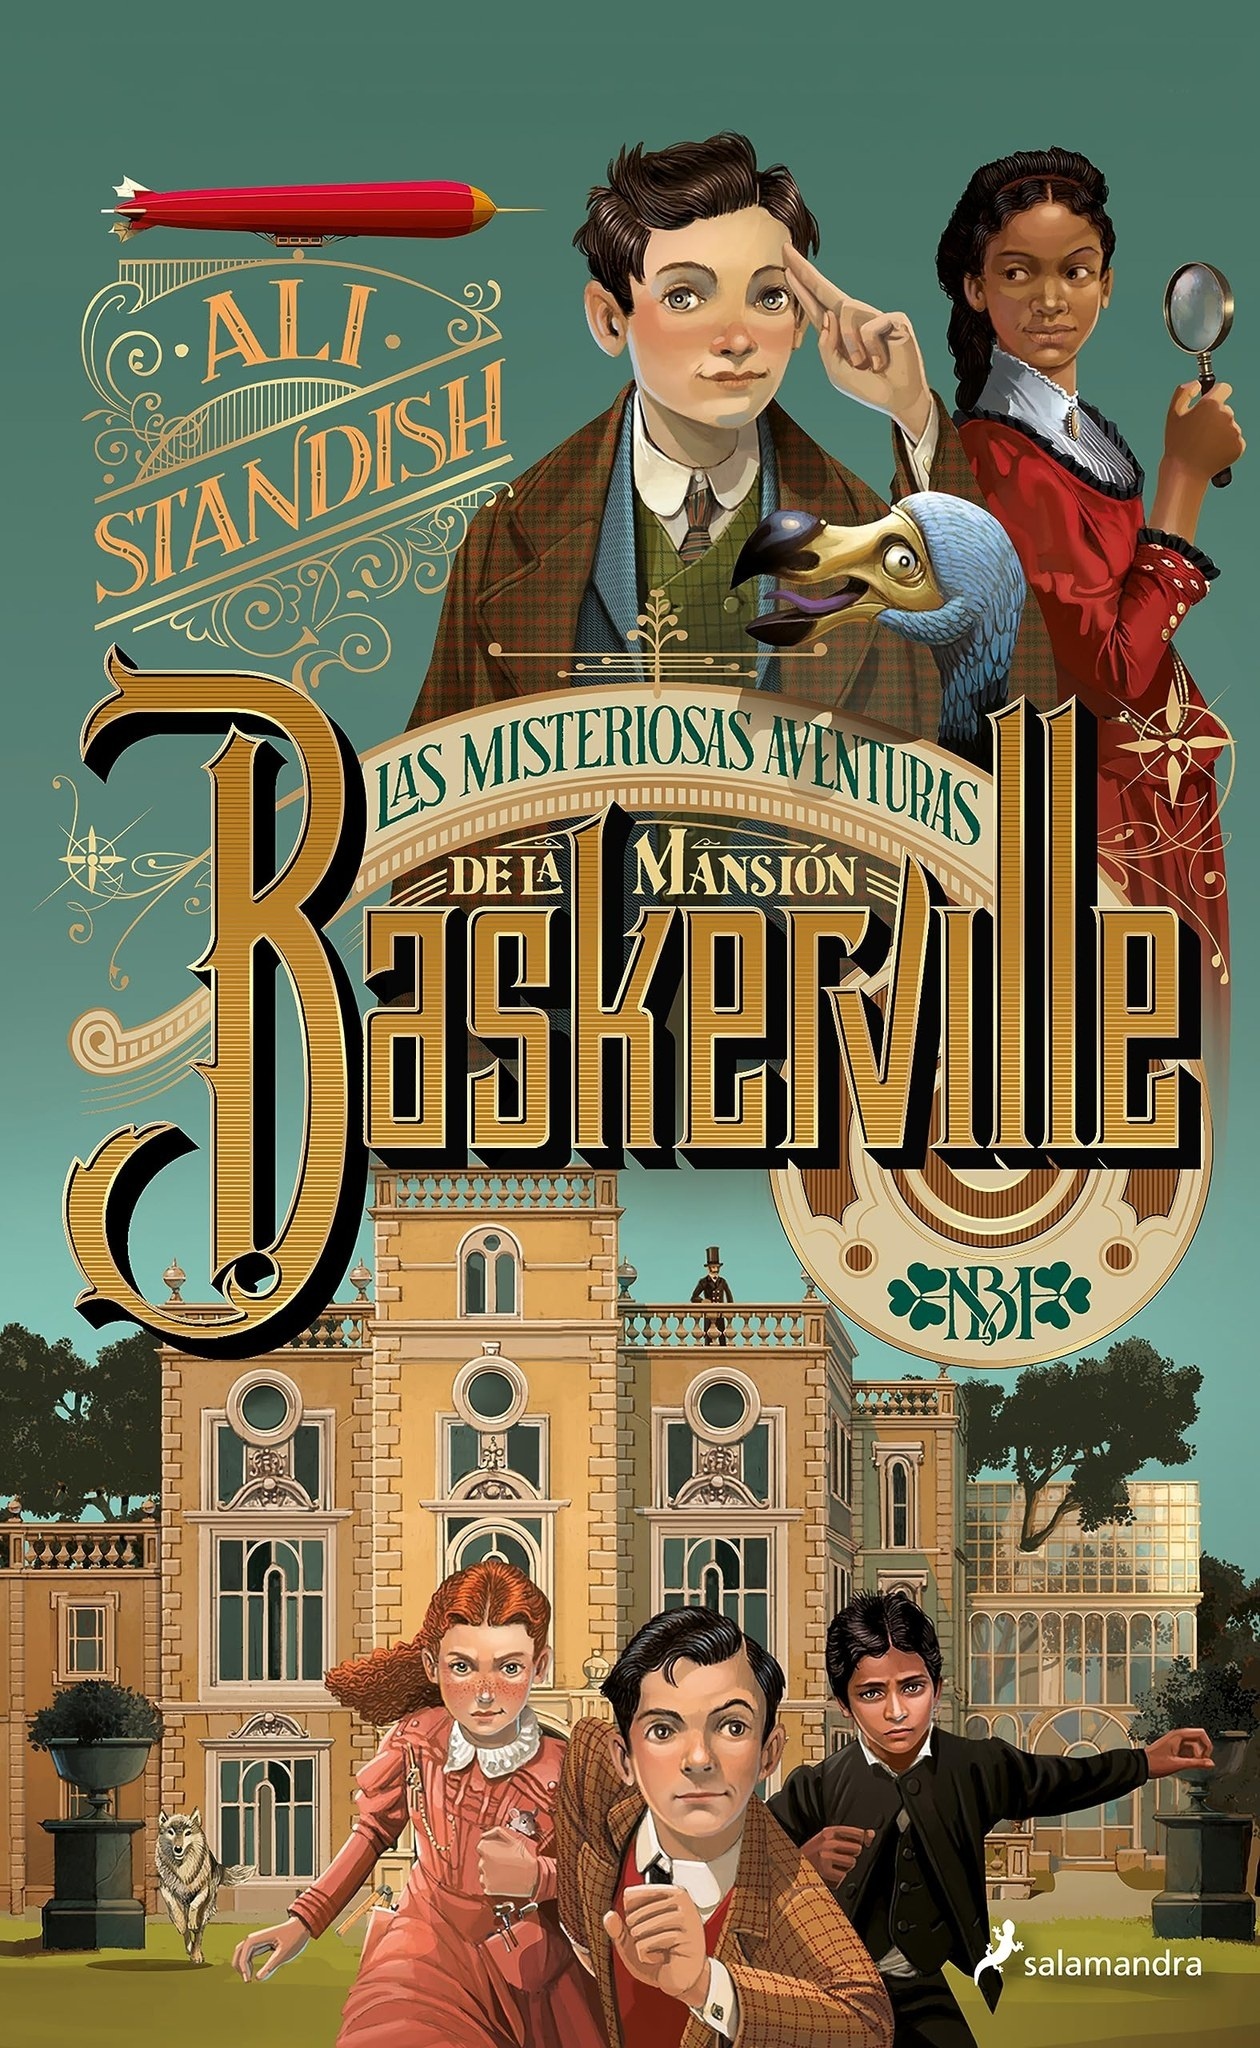 Misteriosas aventuras de la mansión Baskerville, Las. 